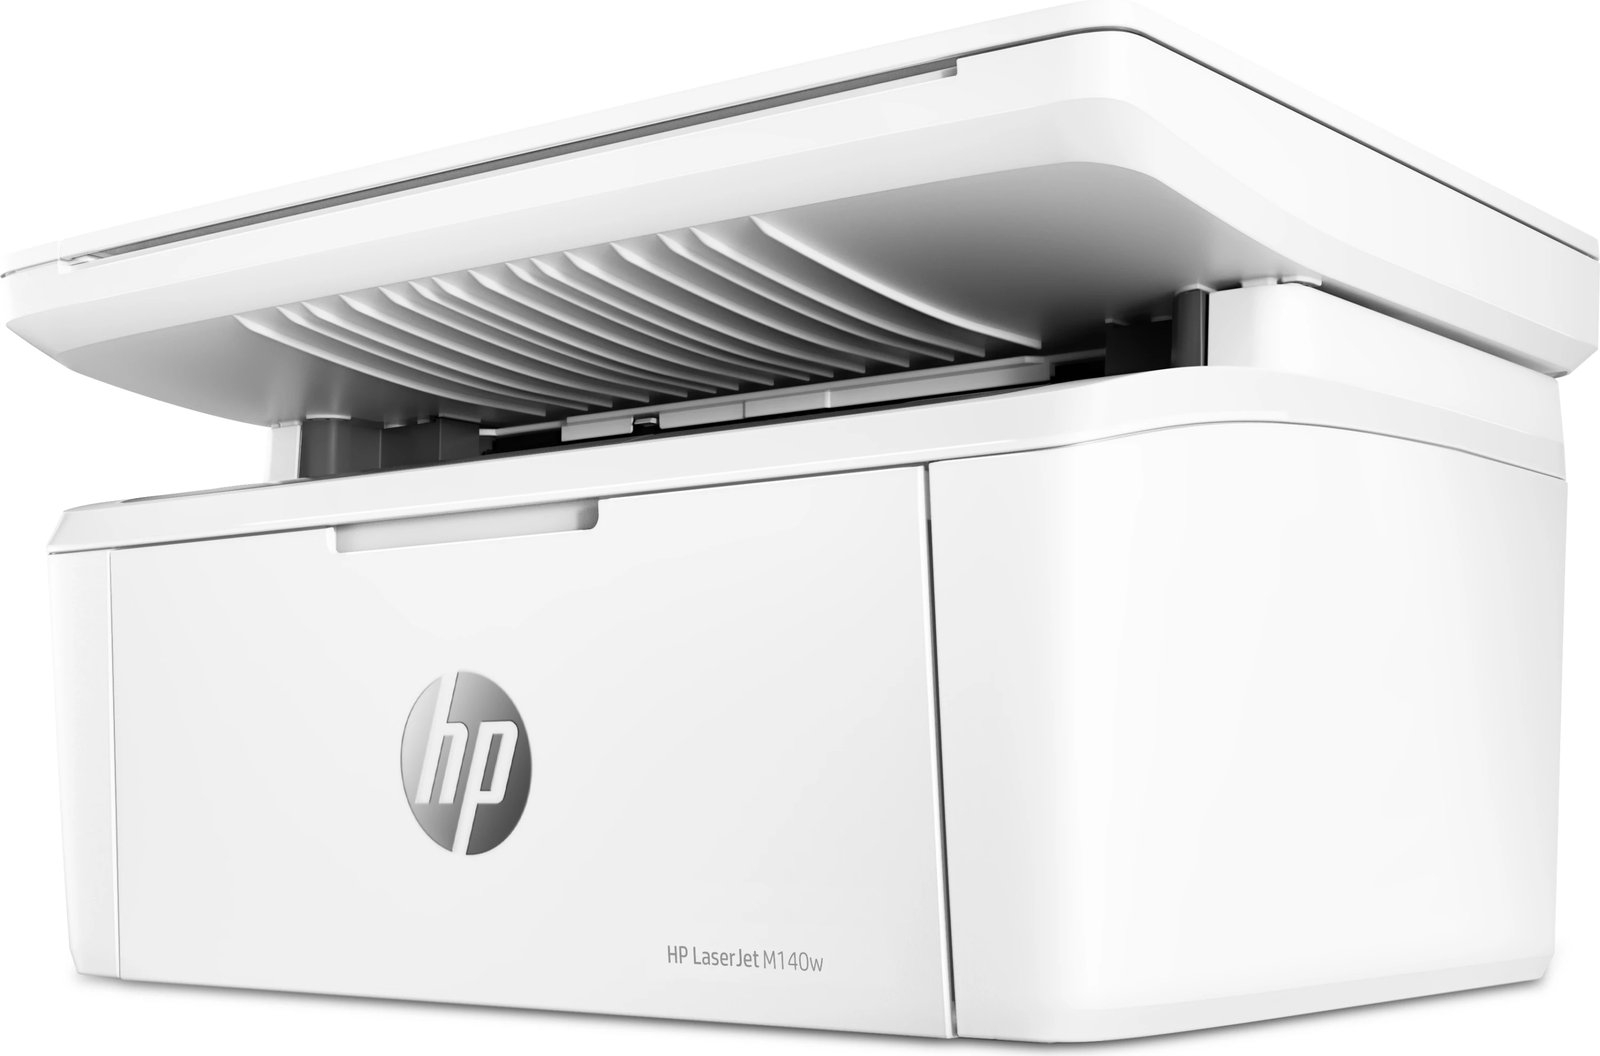 Printer HP, Lasetjet M140W, i bardhë